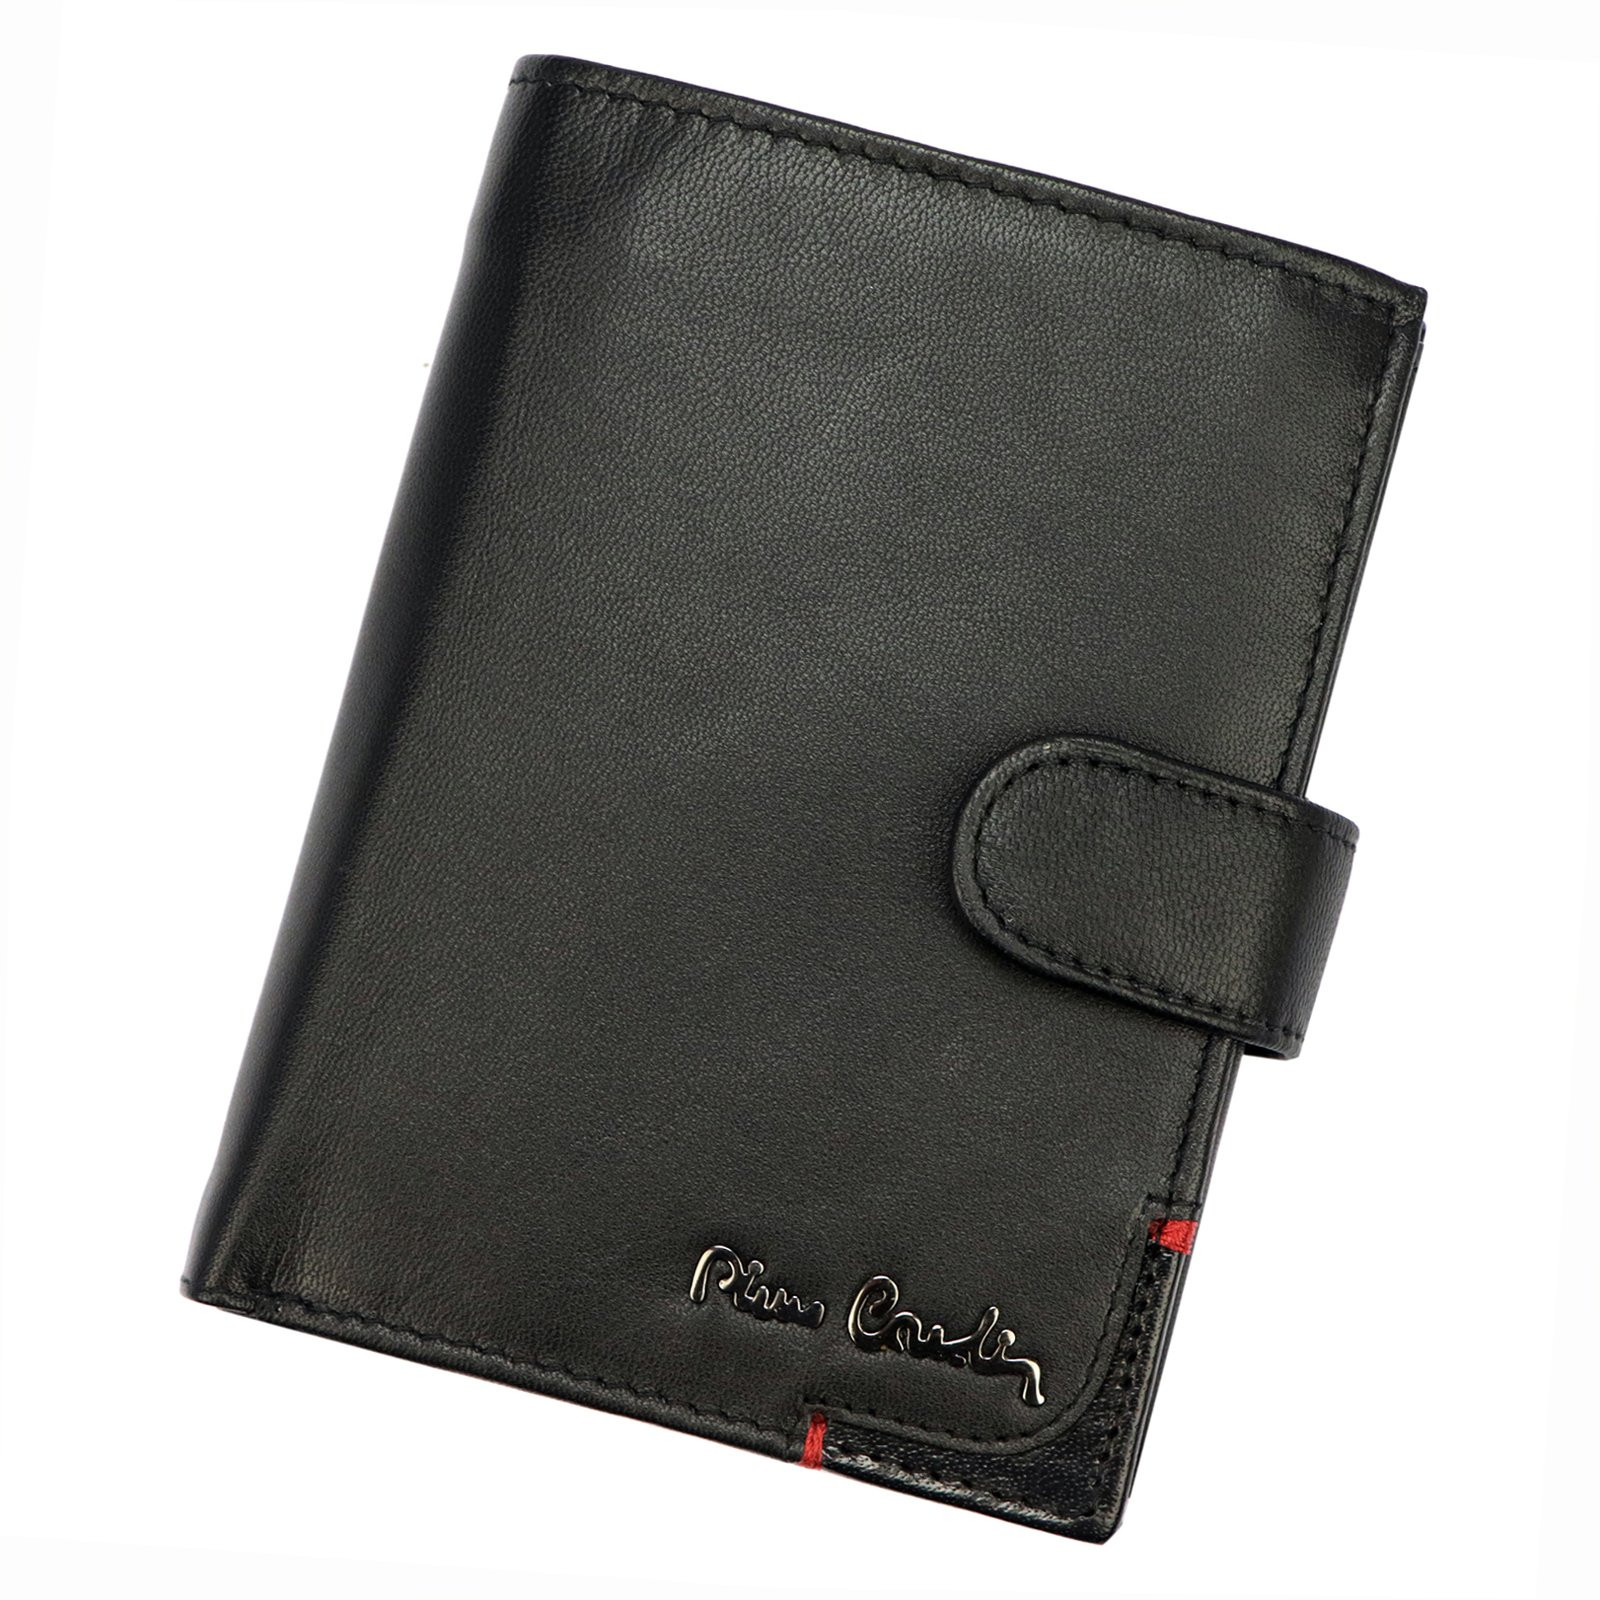 Pánská kožená peněženka Pierre Cardin Sabien - černá